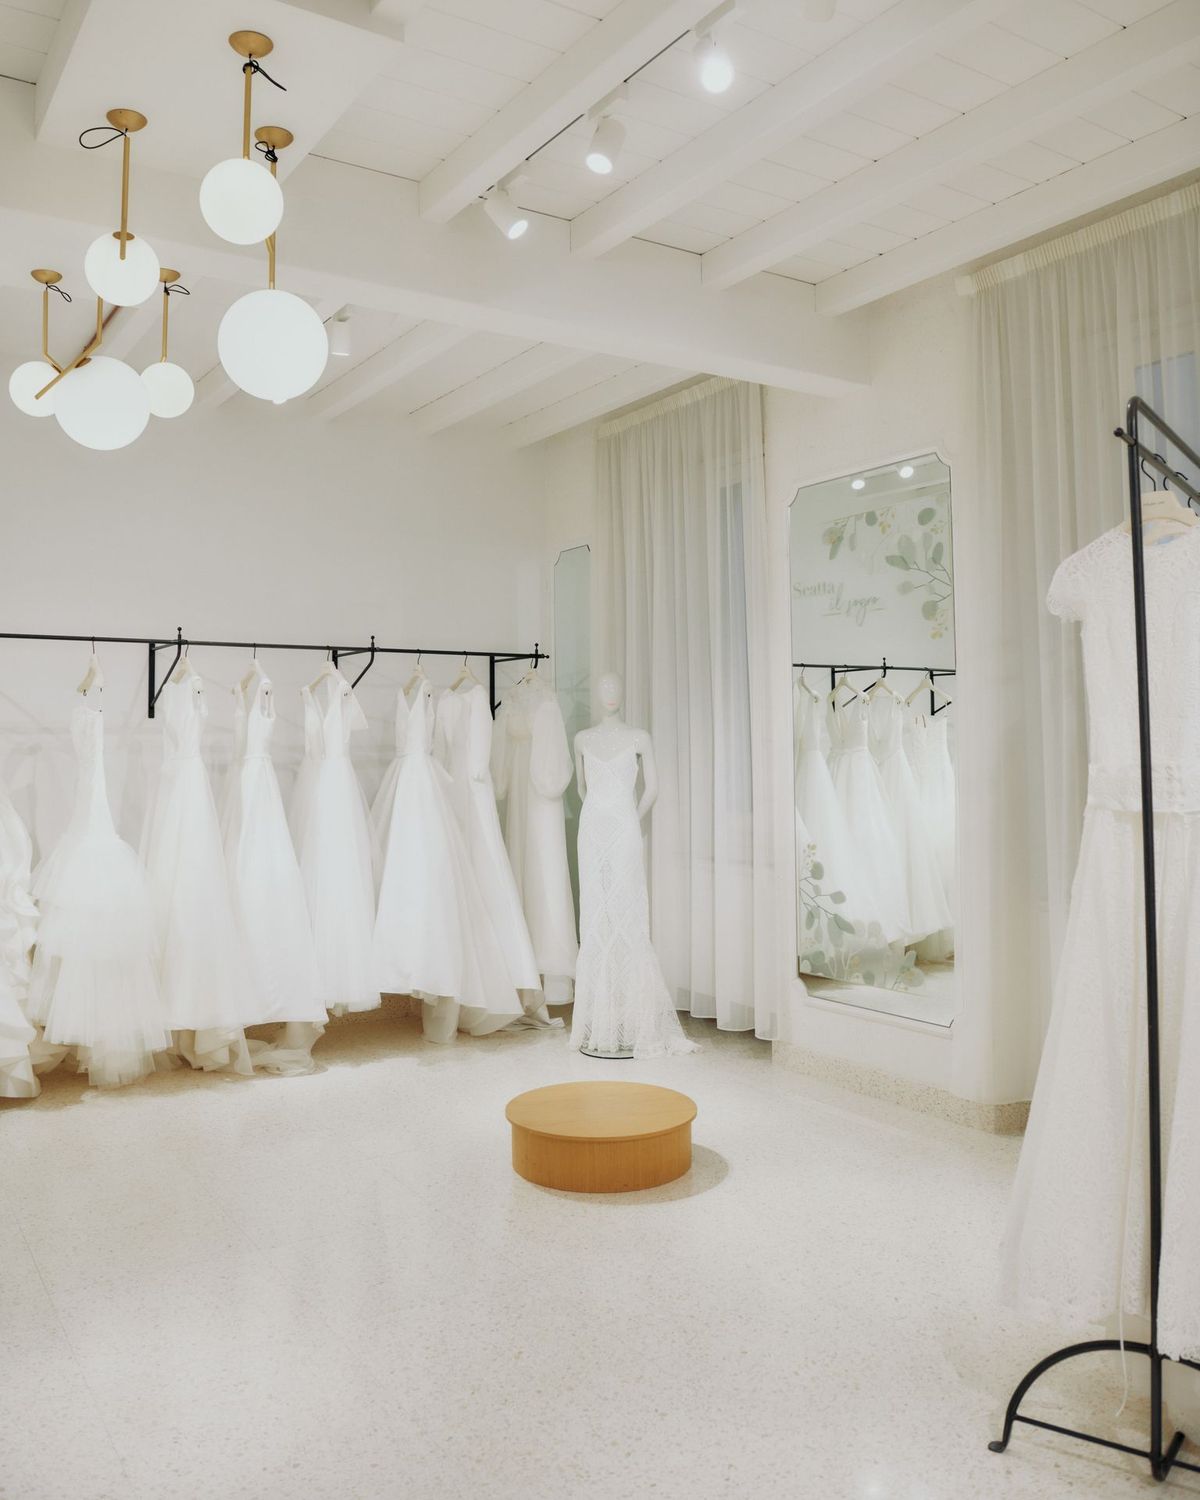 Scatta il sogno in Atelier Emé: Il marchio di abiti da sposa lancia il contest per poter vincere l’abito dei sogni 